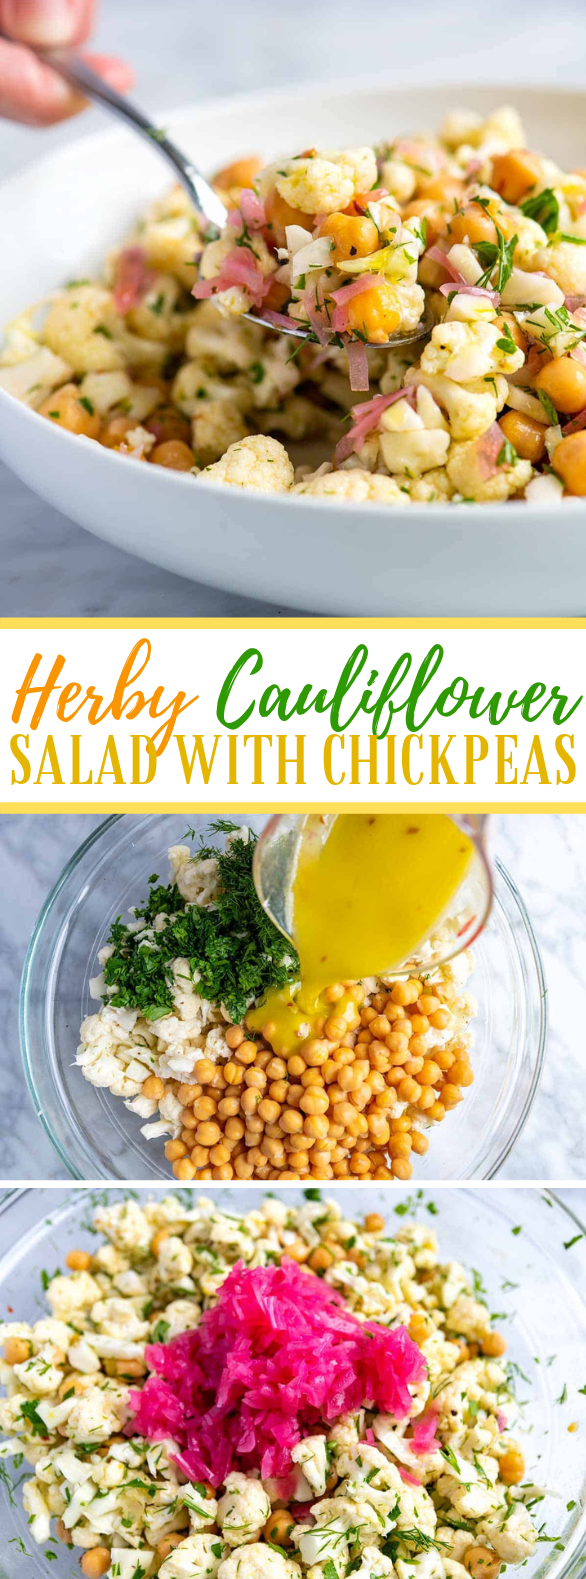 Herby Cauliflower Salad with Chickpeas #vegetarian #glutenfree